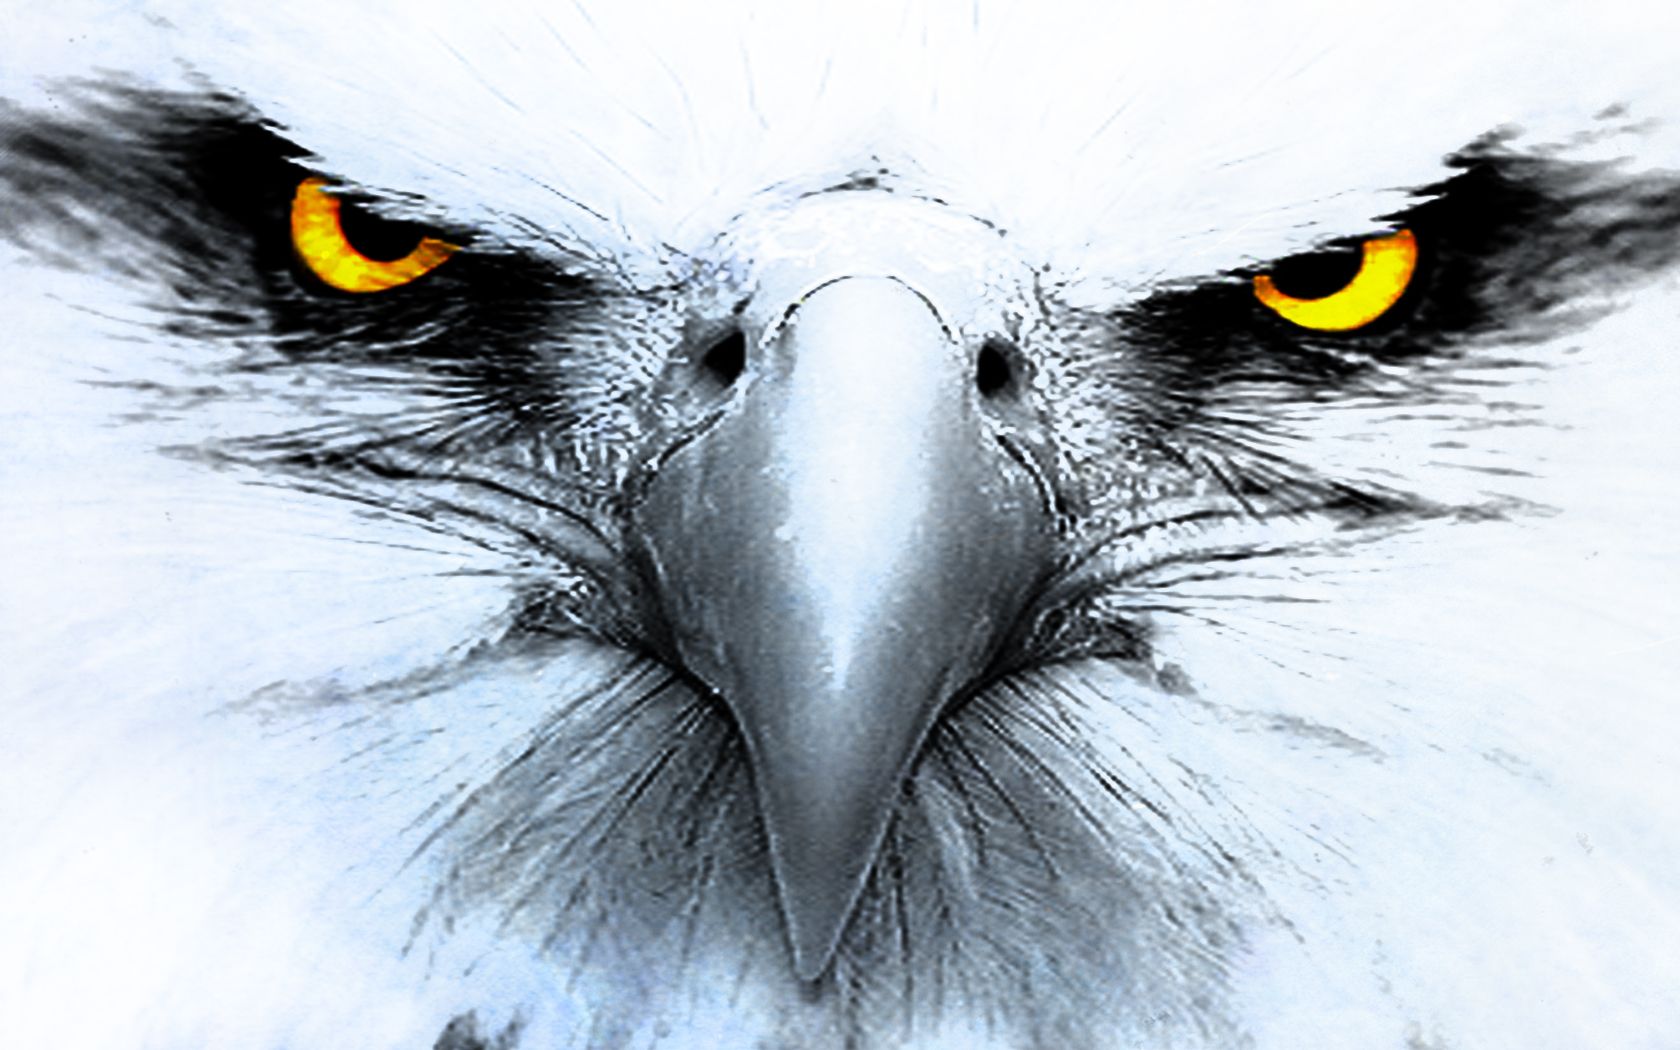  Adler Hintergrundbild 1680x1050. Laden Sie Das Adler Hintergrundbild Für Ihr Handy In Hochwertigen, Hintergrundbildern Adler Kostenlos Herunter